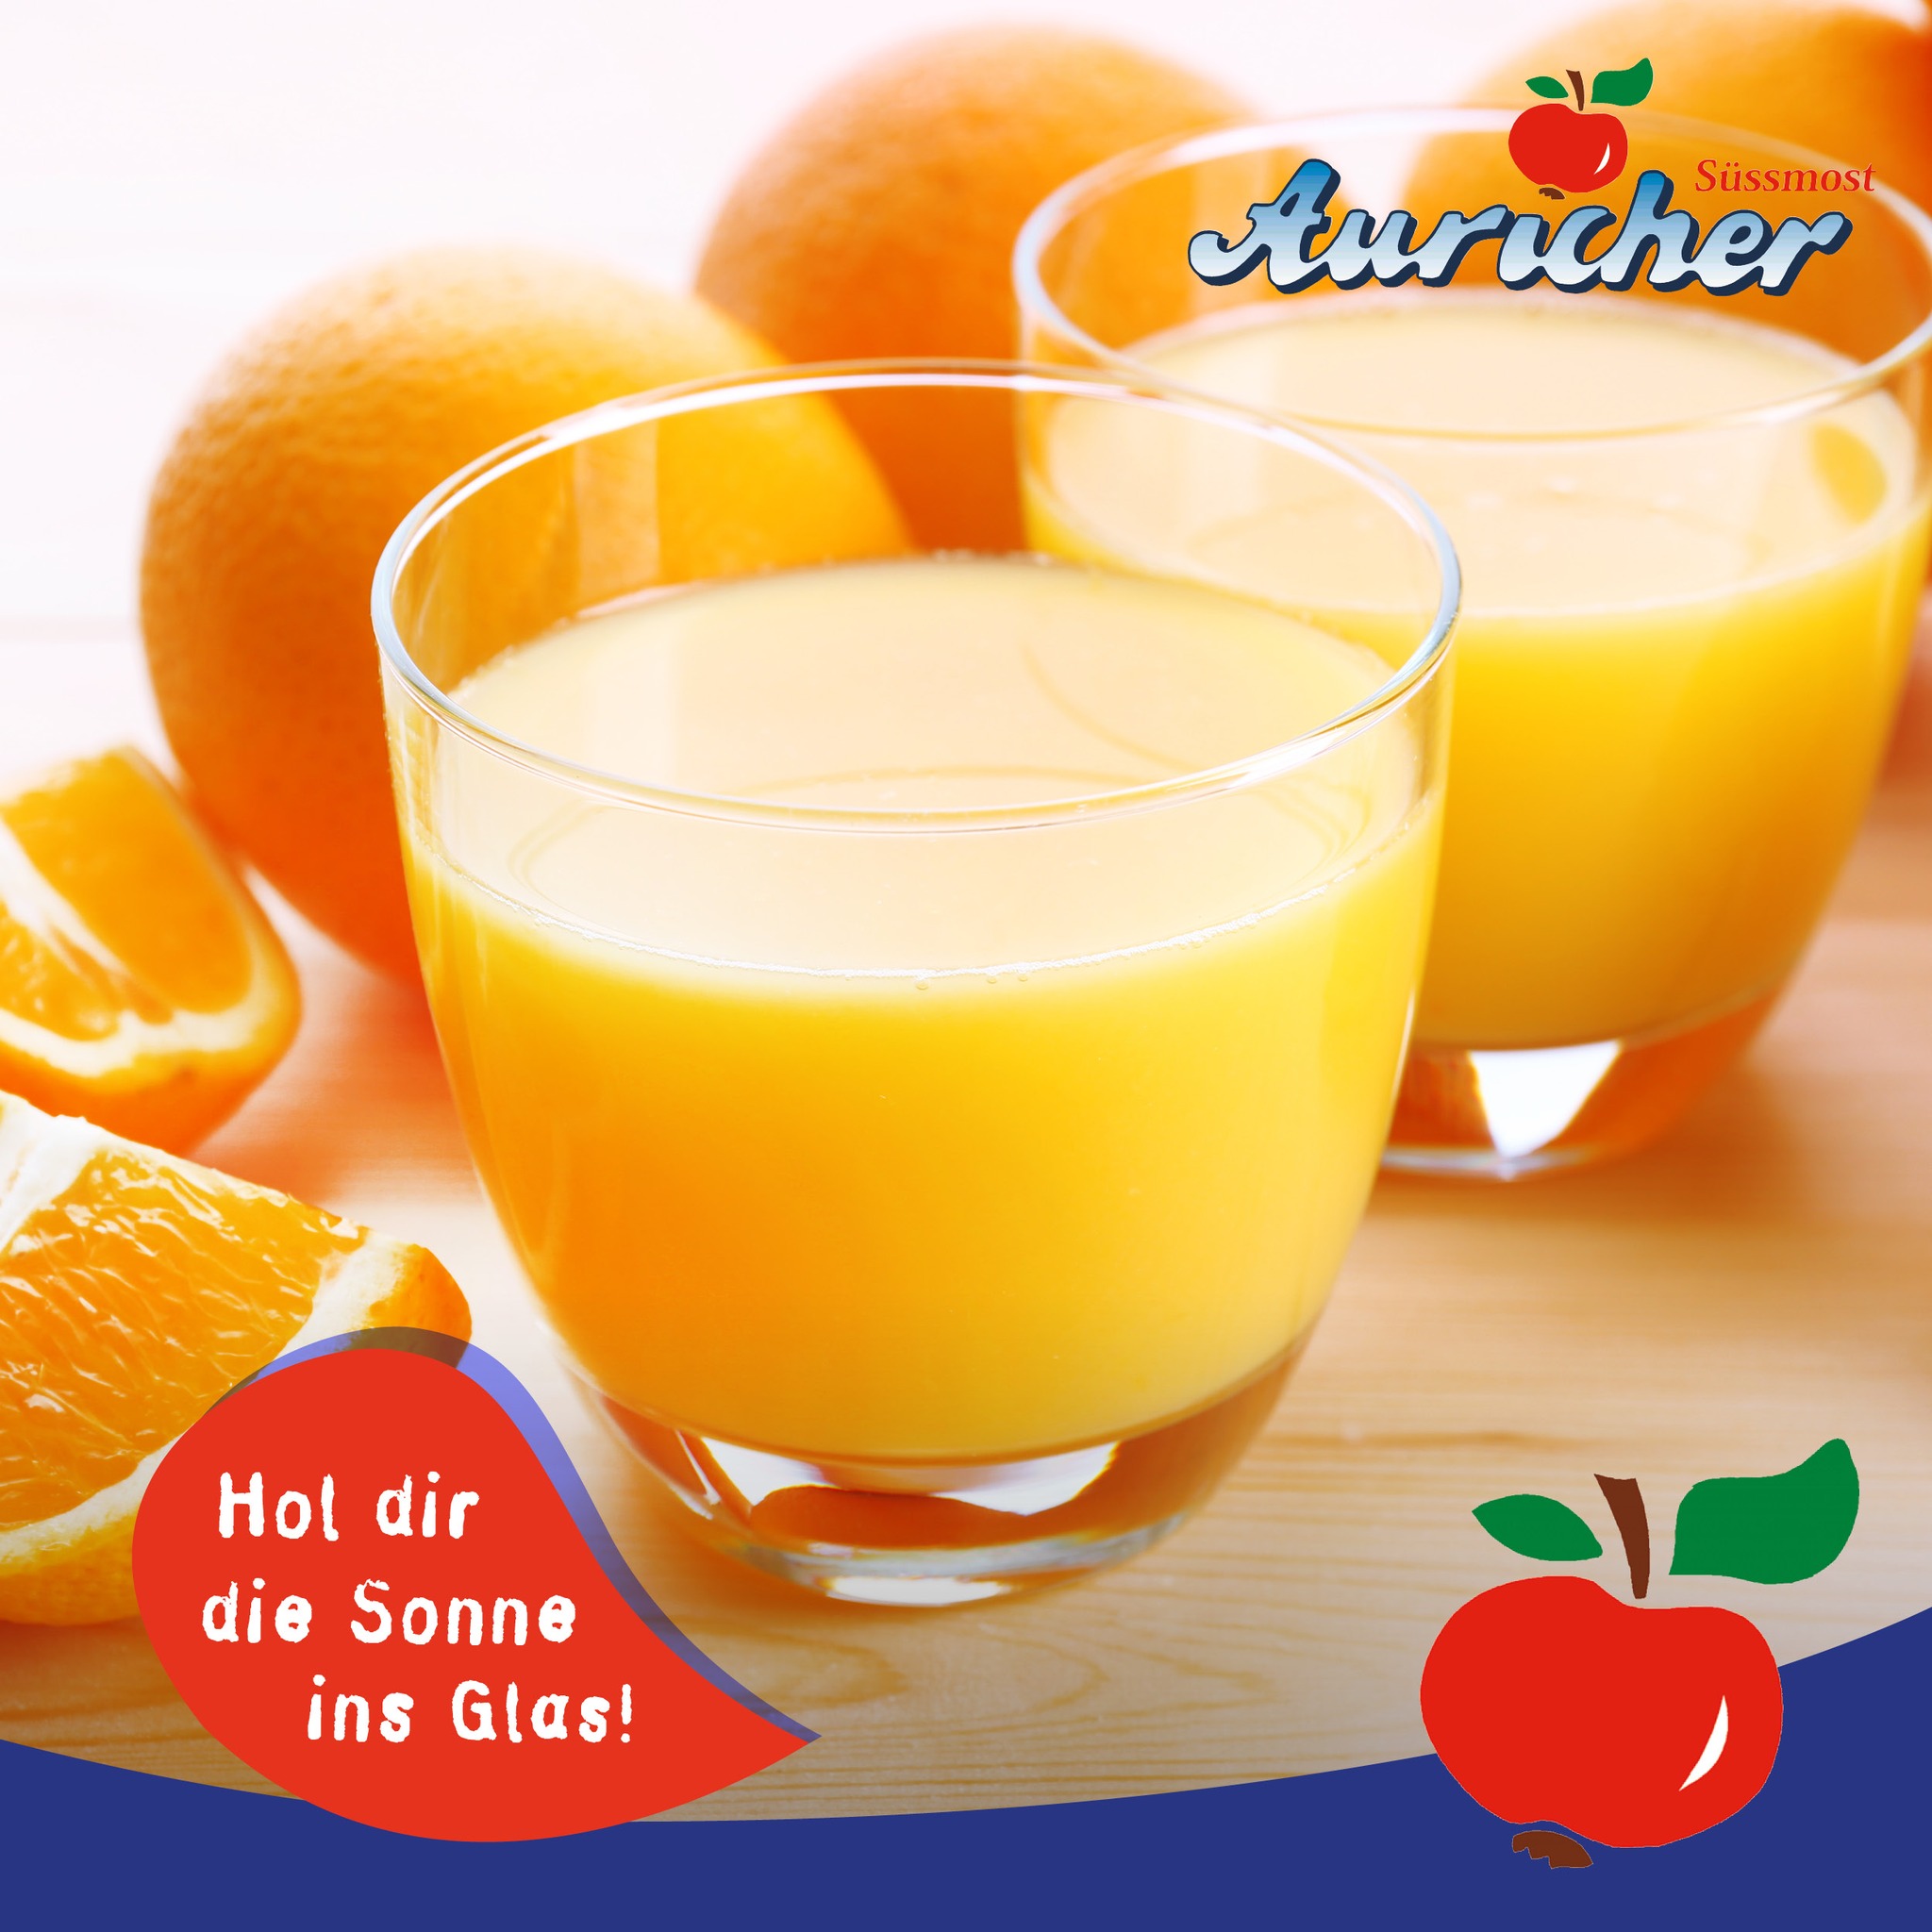 Hol euch die Sonne ins Glas mit unseren Fruchtsäften! ☀🍊